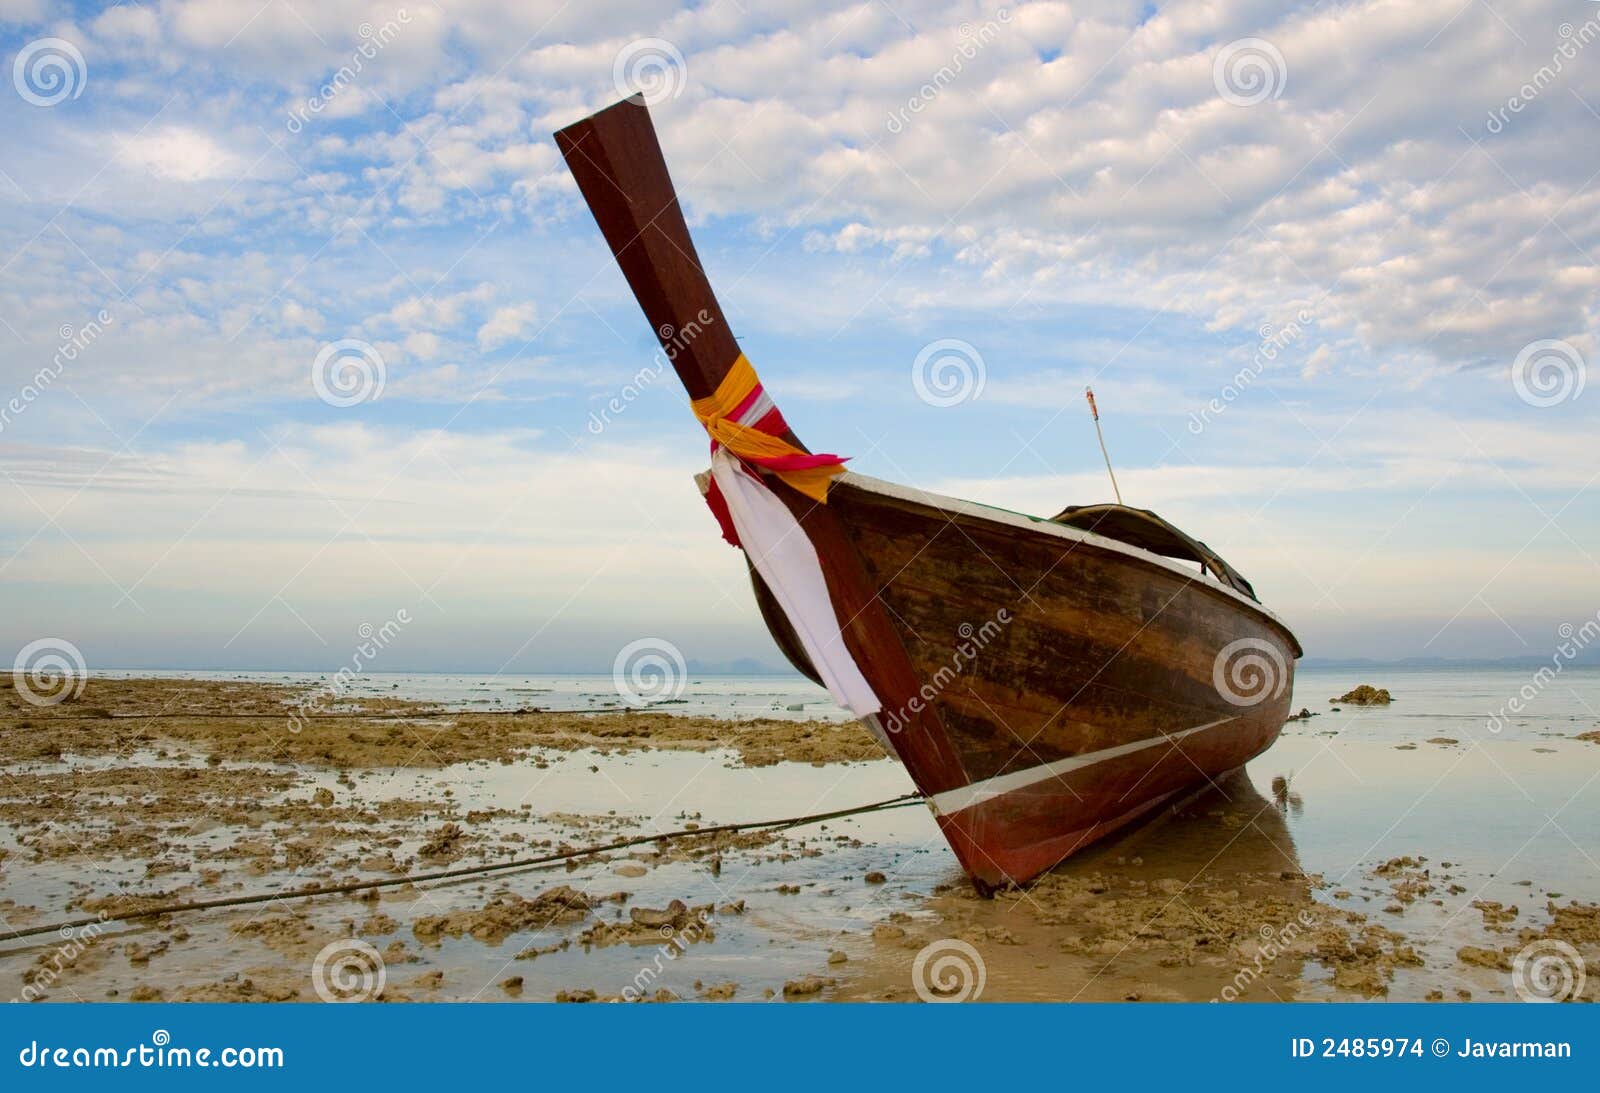 longtail boat in low tide